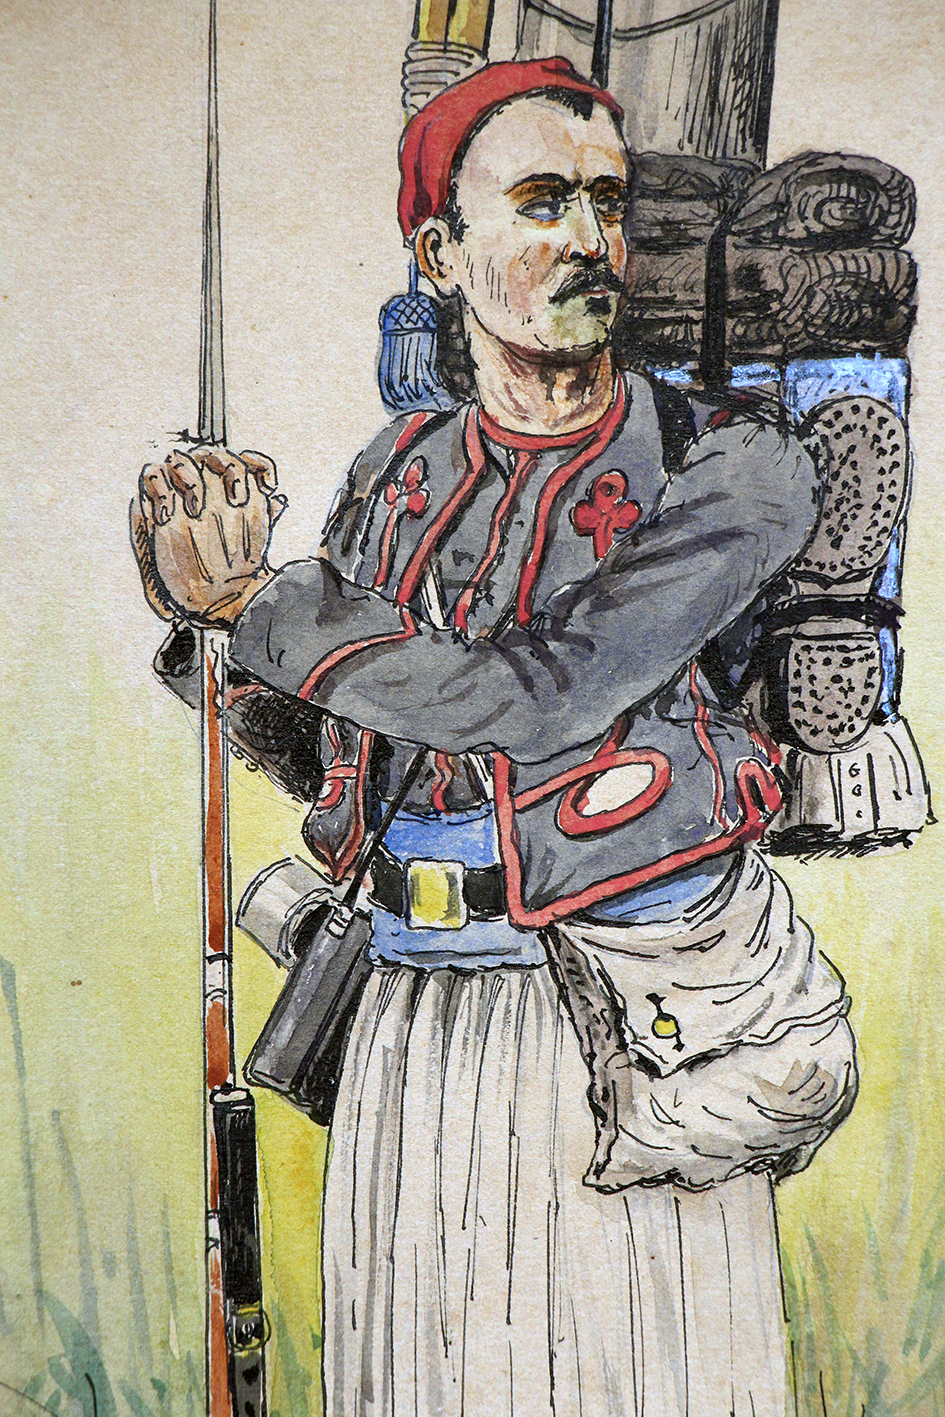 Dessin rehaussé - Zouaves uniforme - Soldat en faction - Guerre 14/18